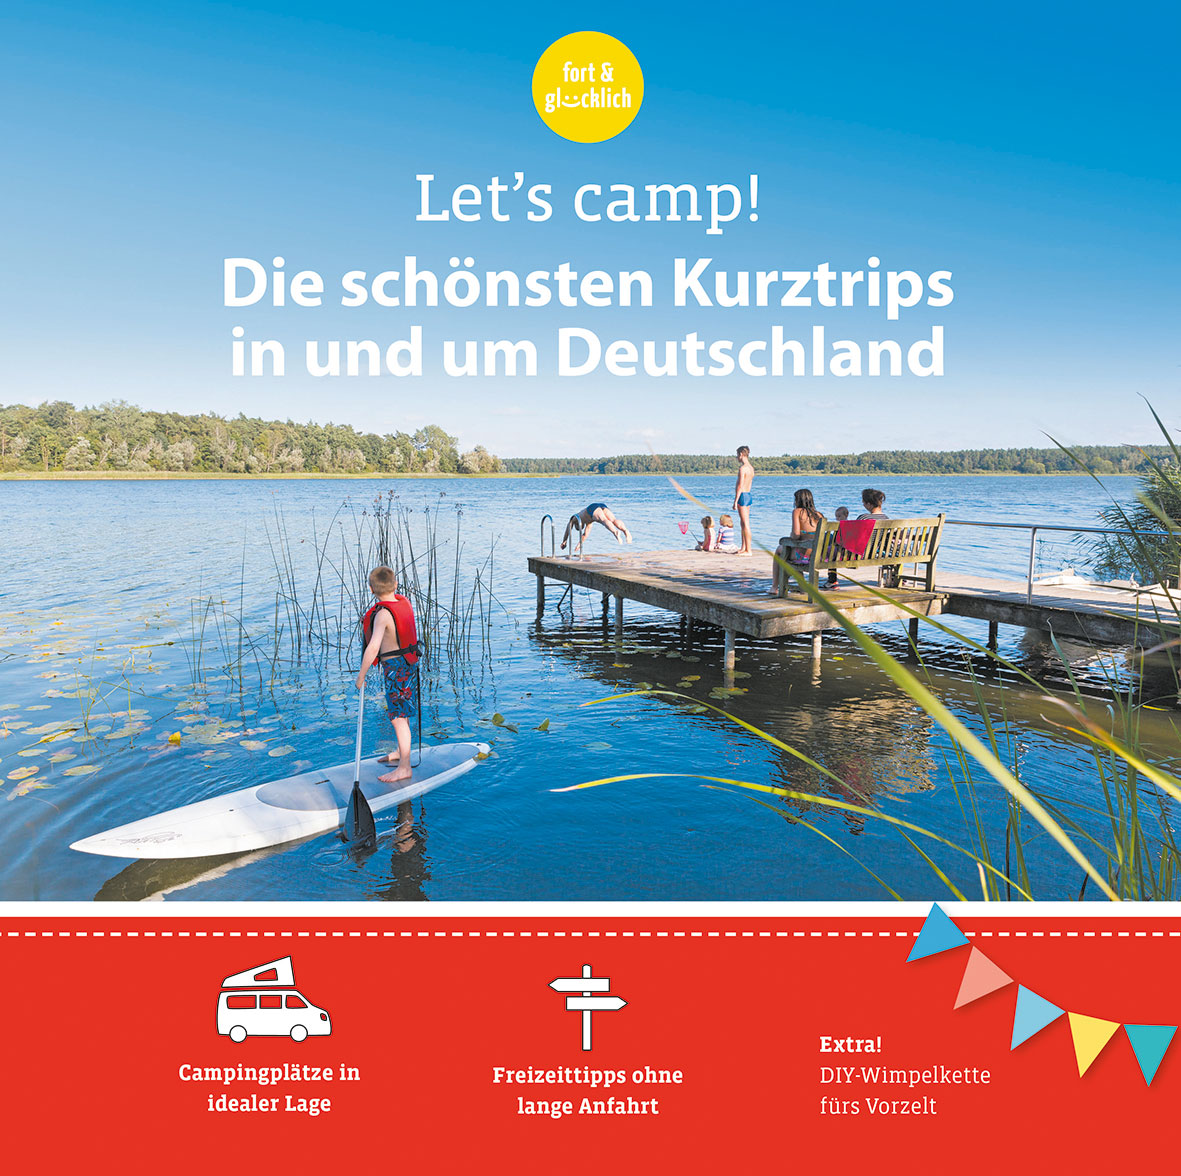 Let‘s camp! - Die schönsten Kurztrips in und um Deutschland